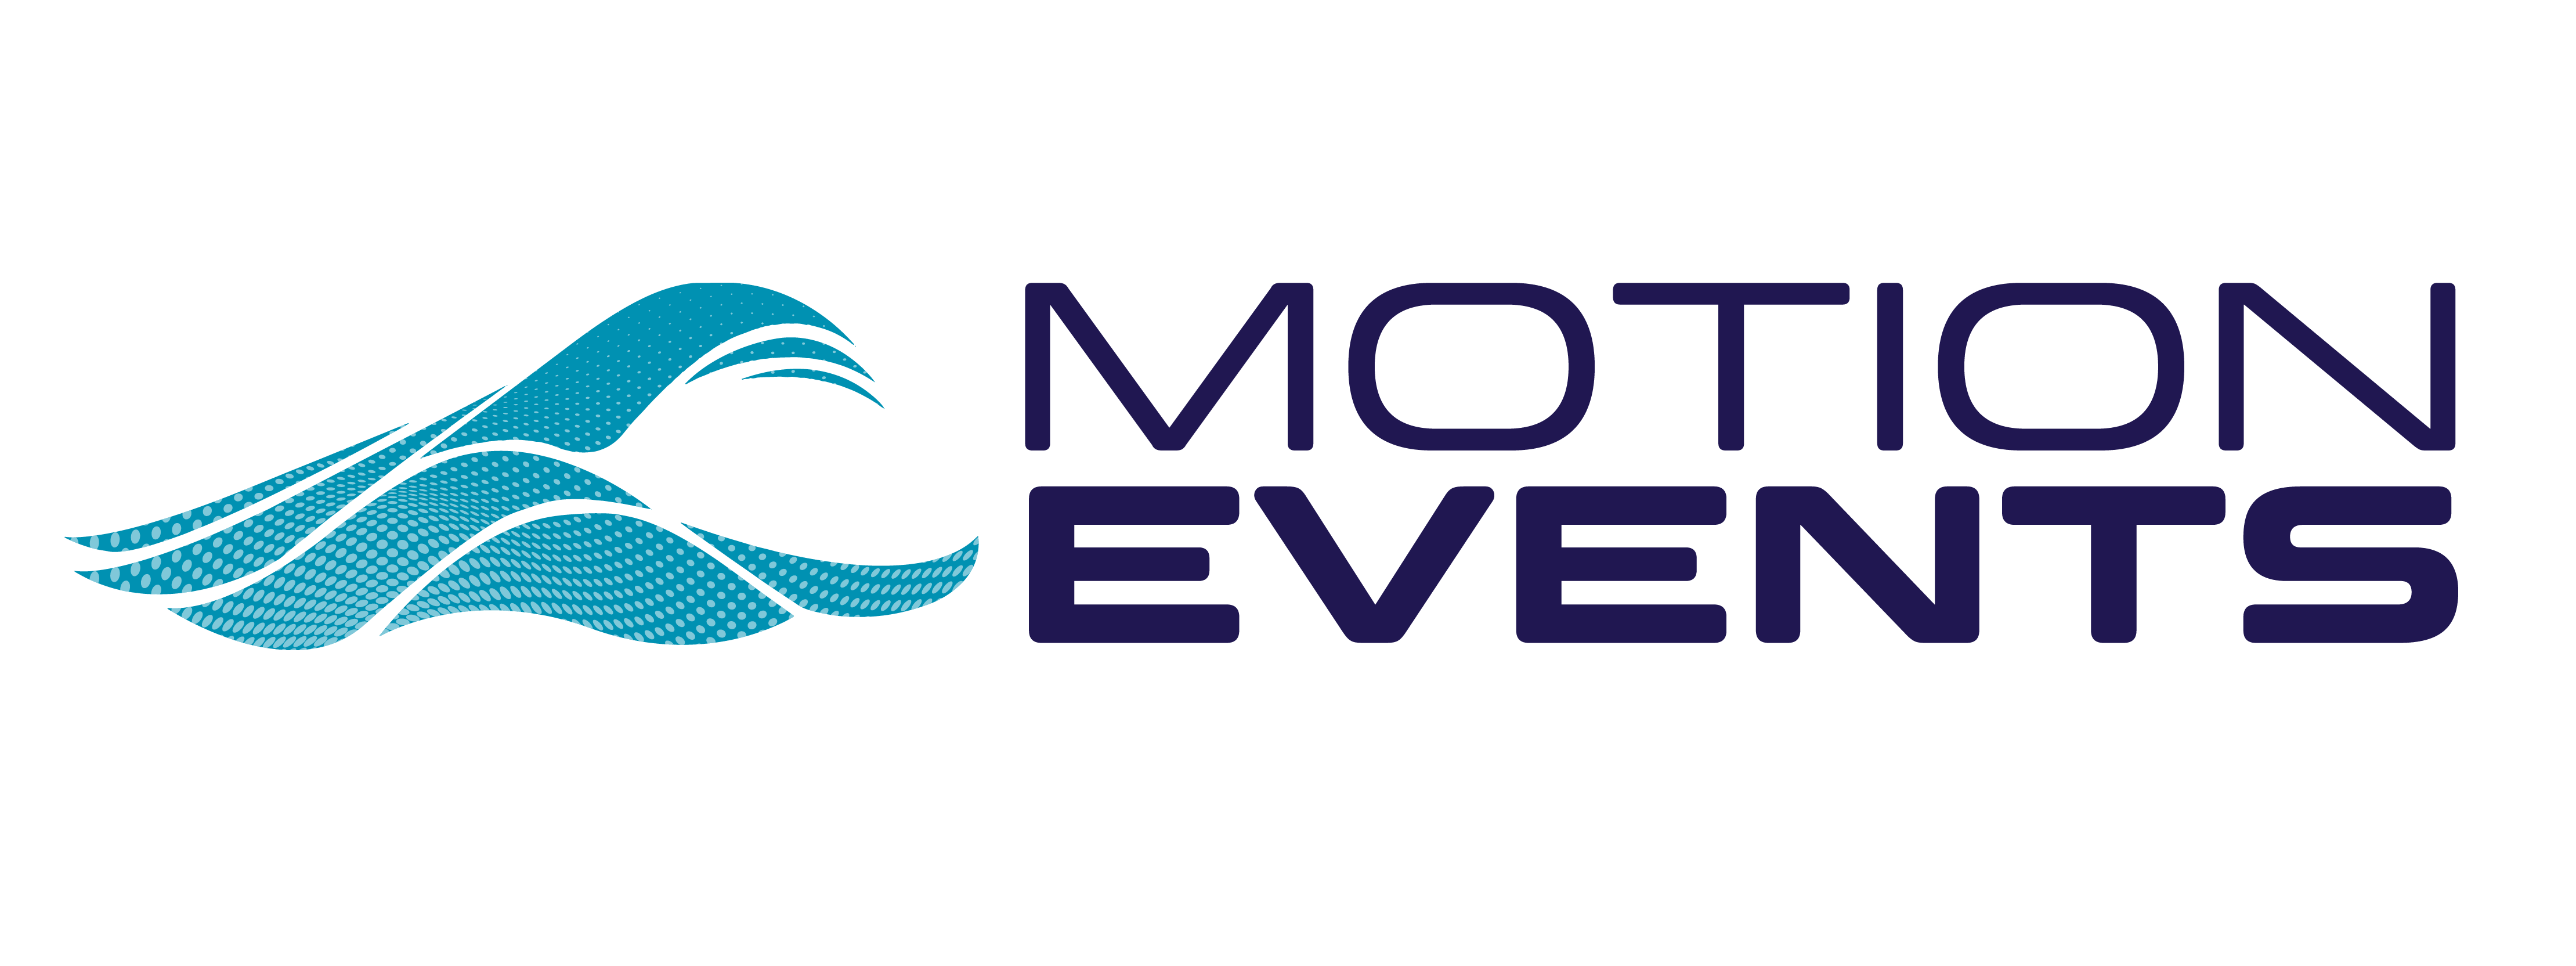 Logo Motion Events2021 Mesa De Trabajo 1 Copia